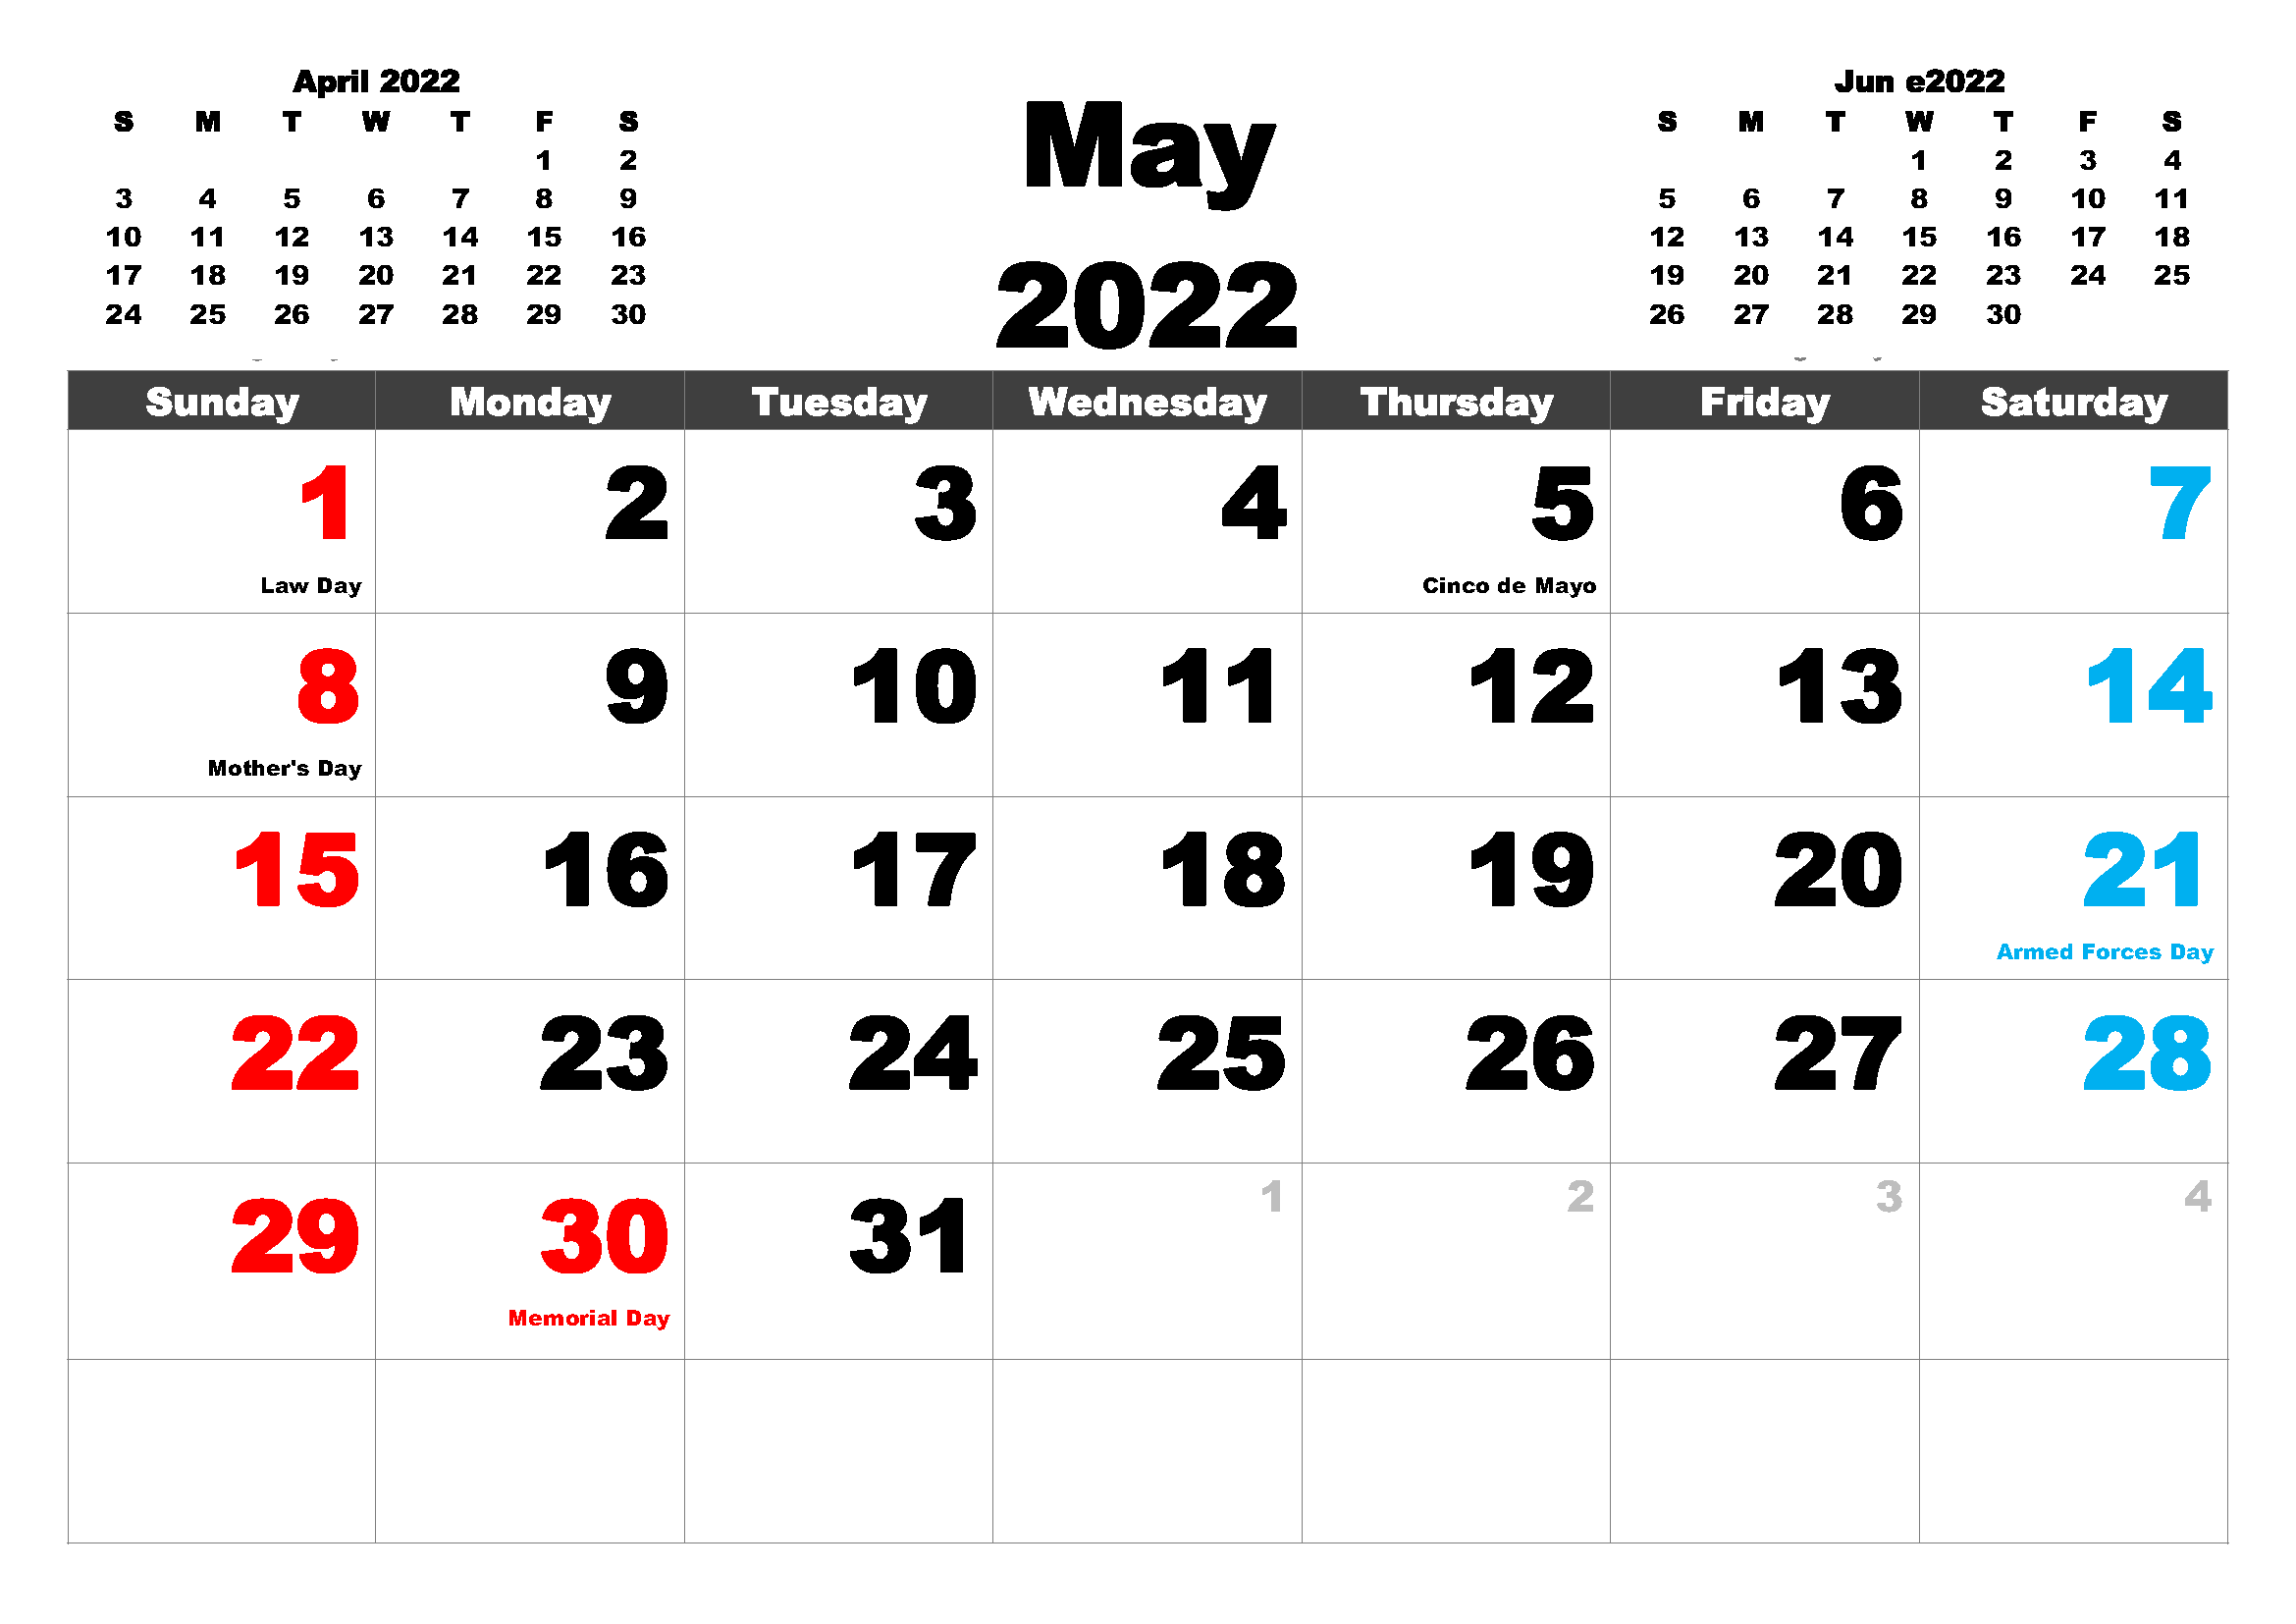 May 2022 Holidays Calendar Template